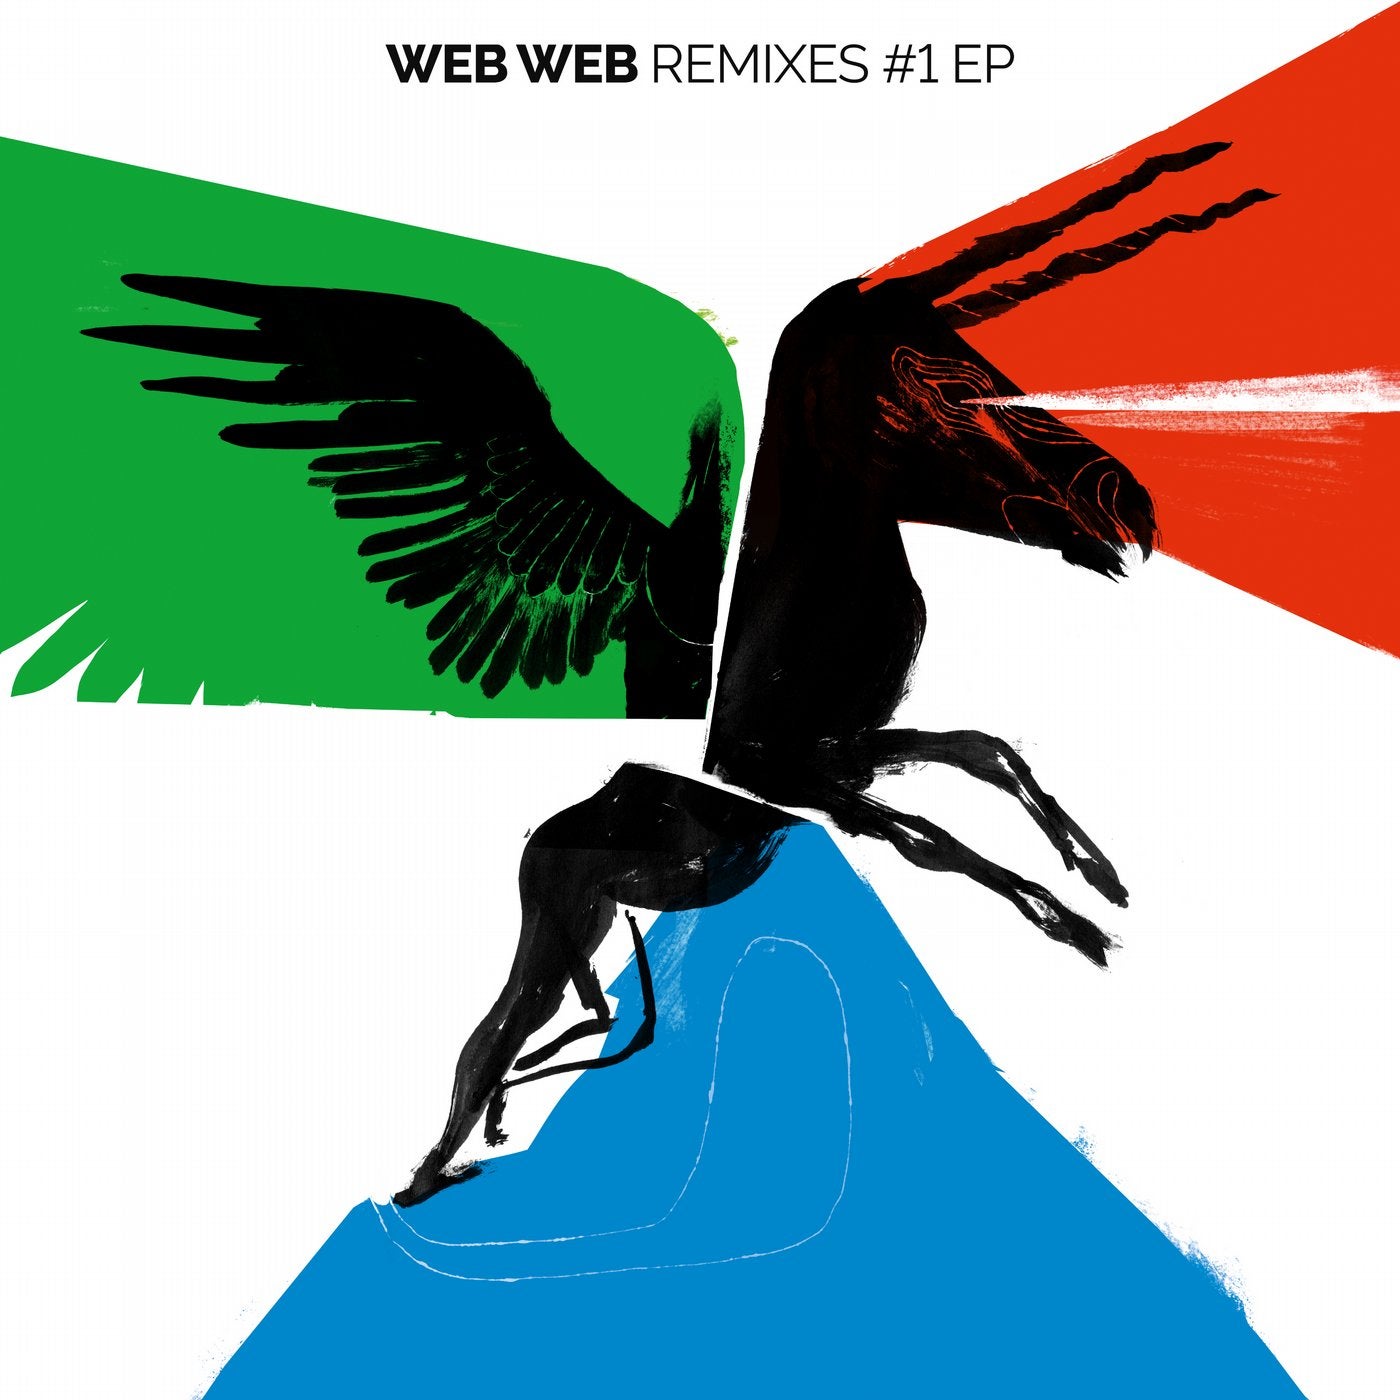 Remixes #1 EP